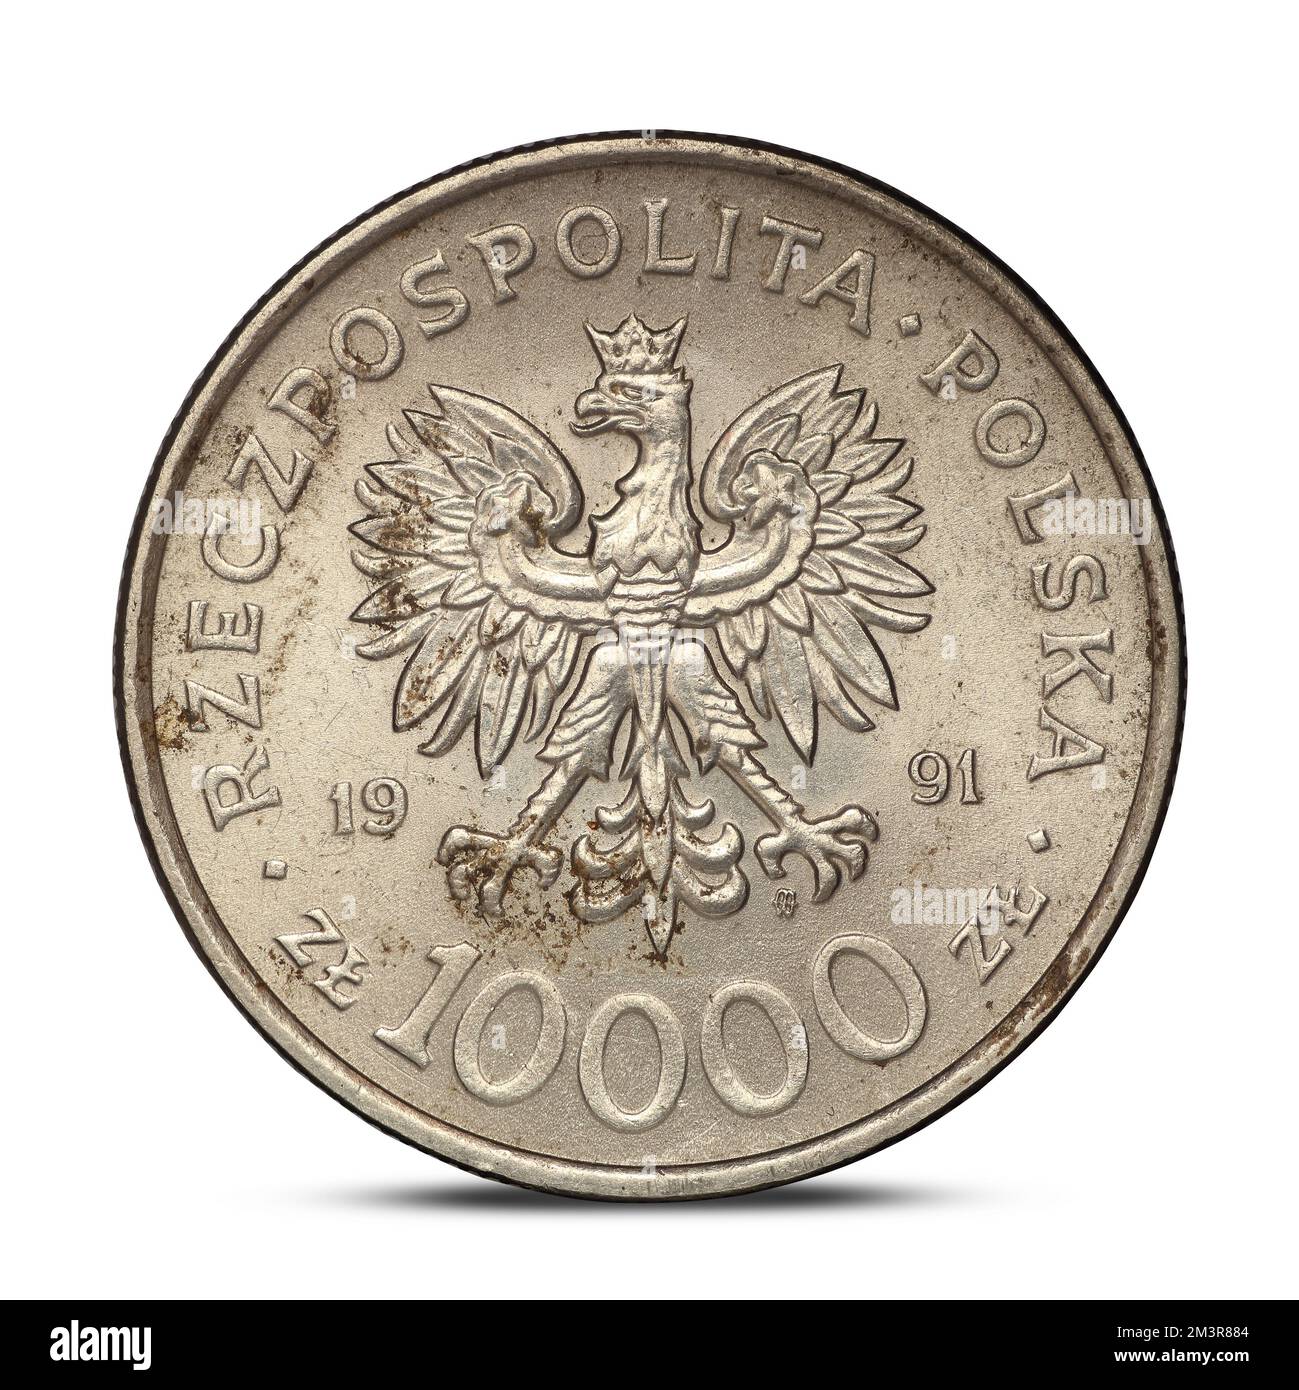 Moneta commemorativa polacca del 1991 che passa la costituzione su sfondo bianco Foto Stock